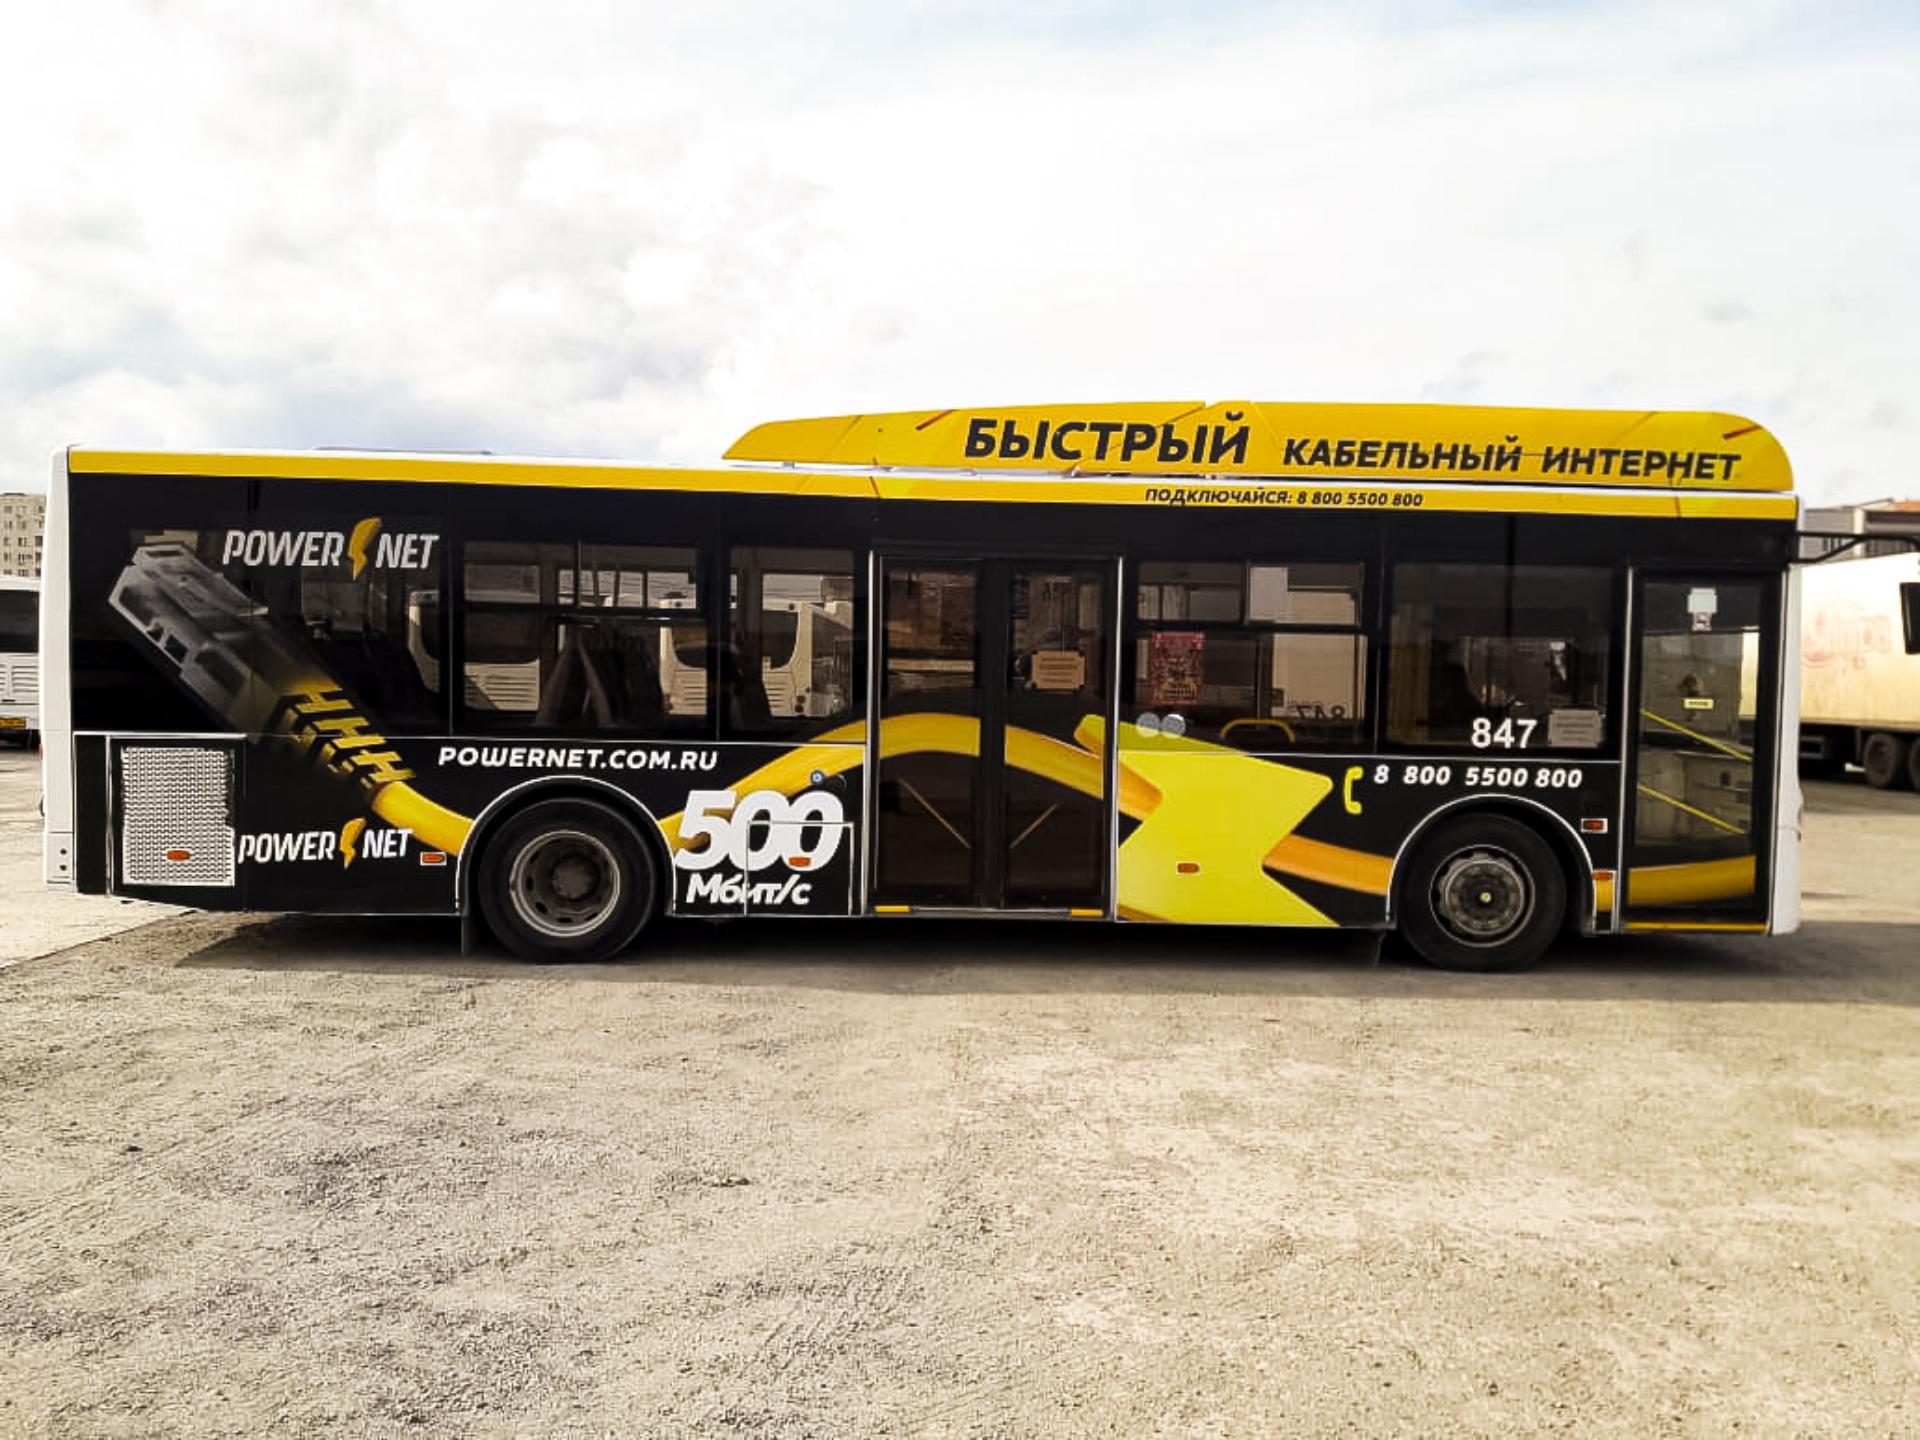 Реклама на автобусе для PowerNet